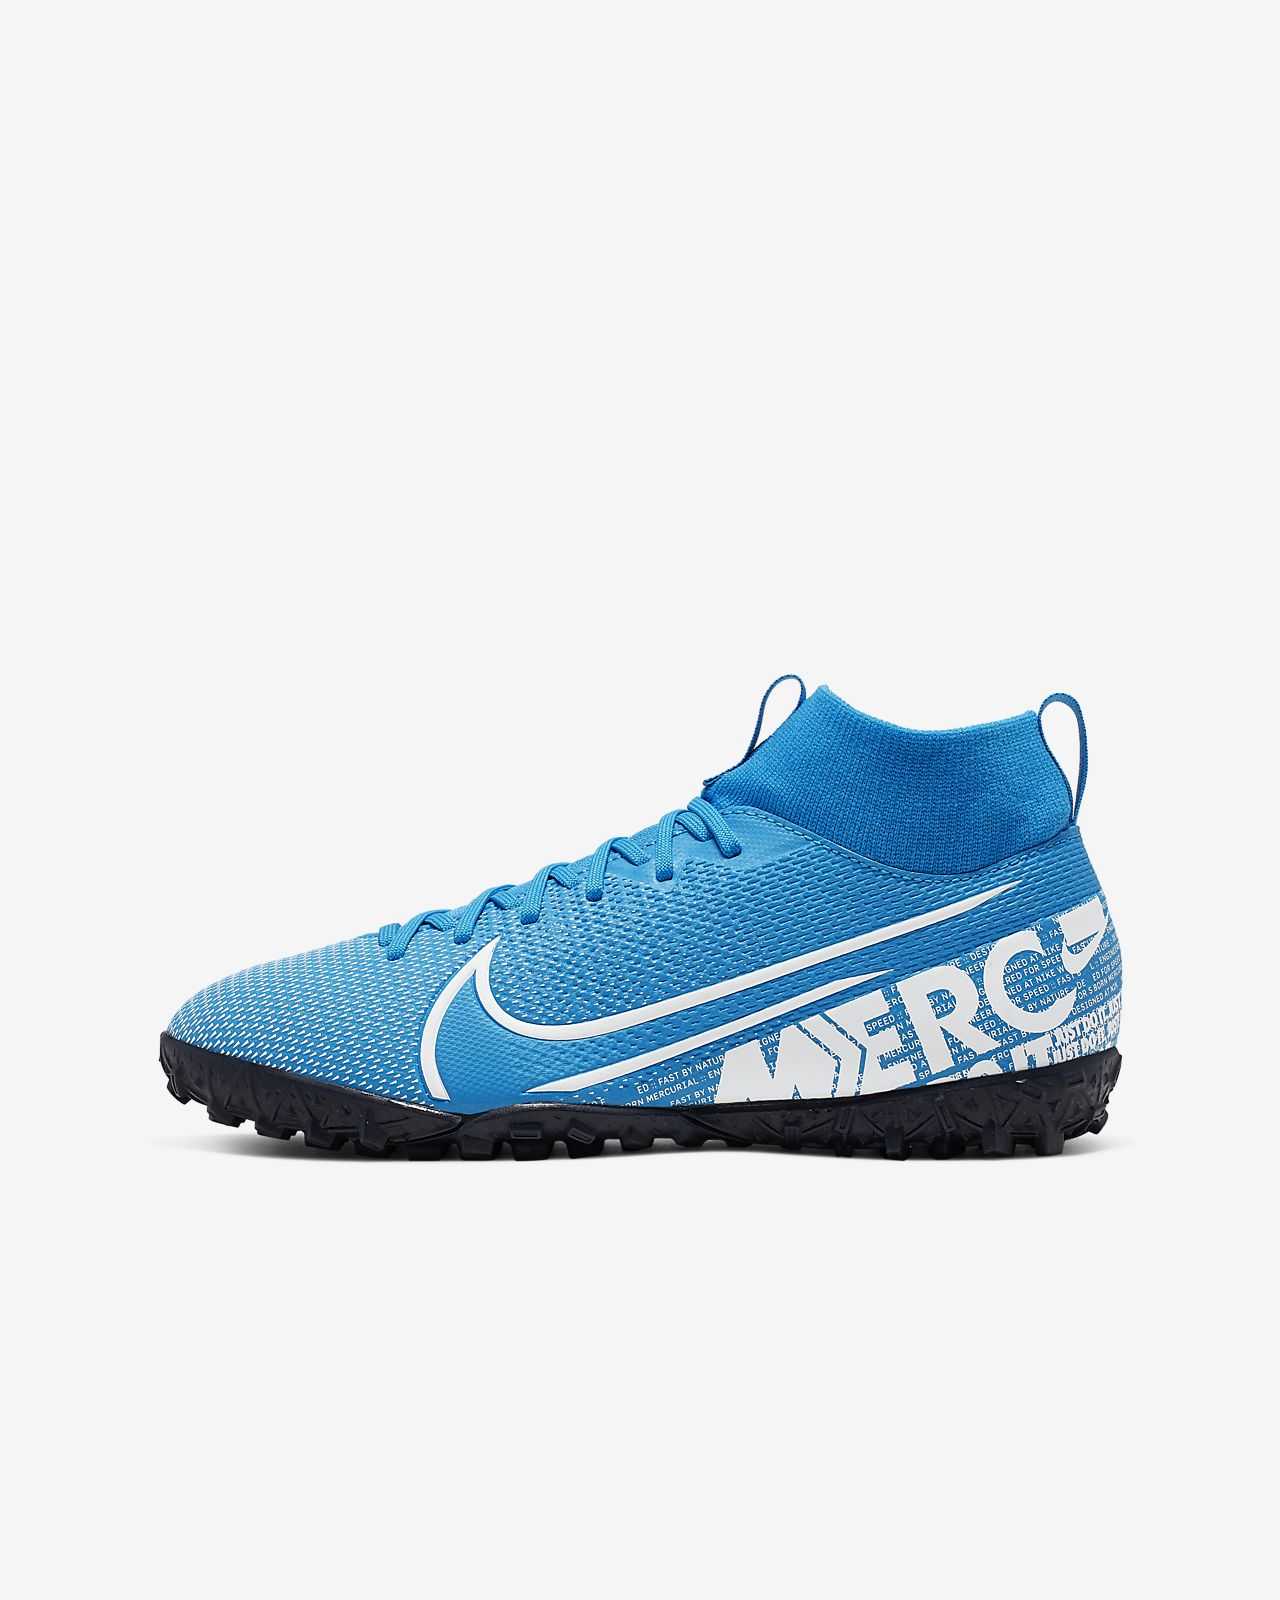 Chaussures de foot Nike Hypervenom Phantom III DF FG Bleu